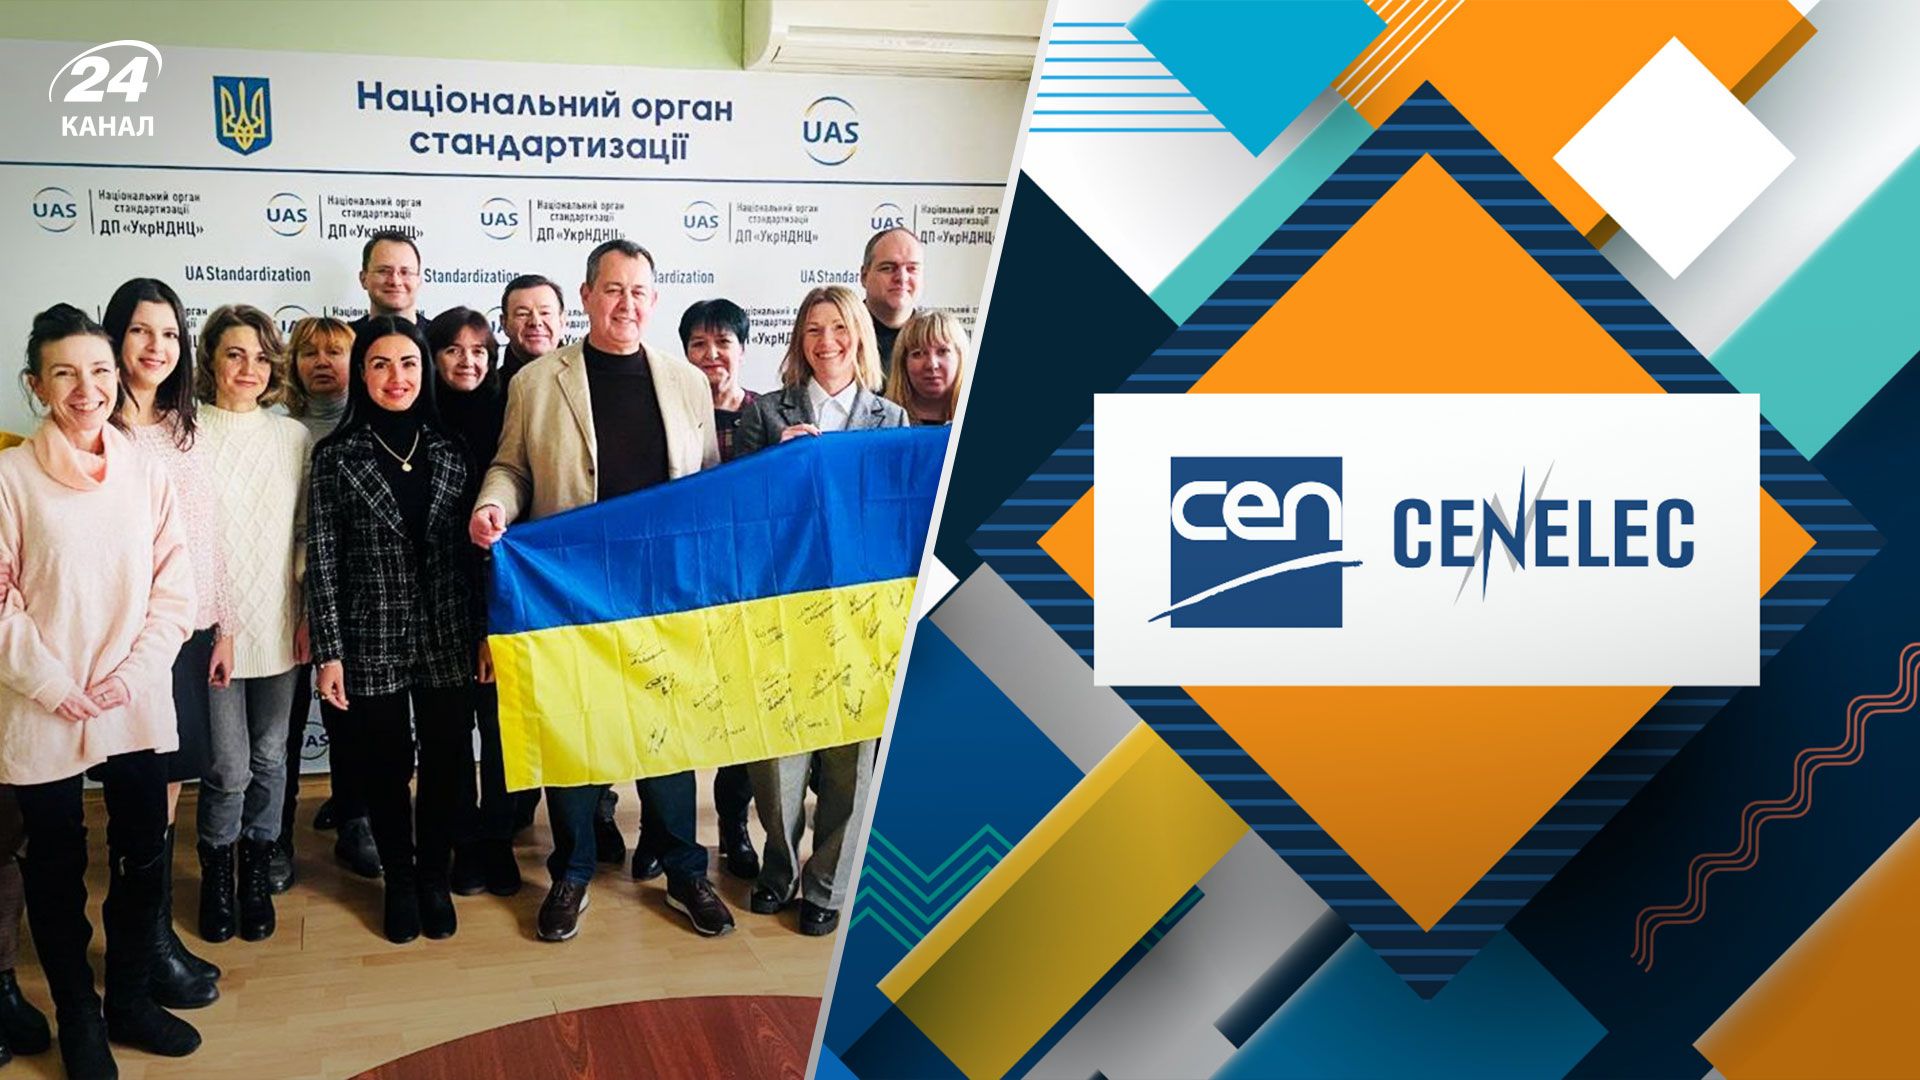 Украина сделала важный шаг к полноправному членству в CEN и CENELEC